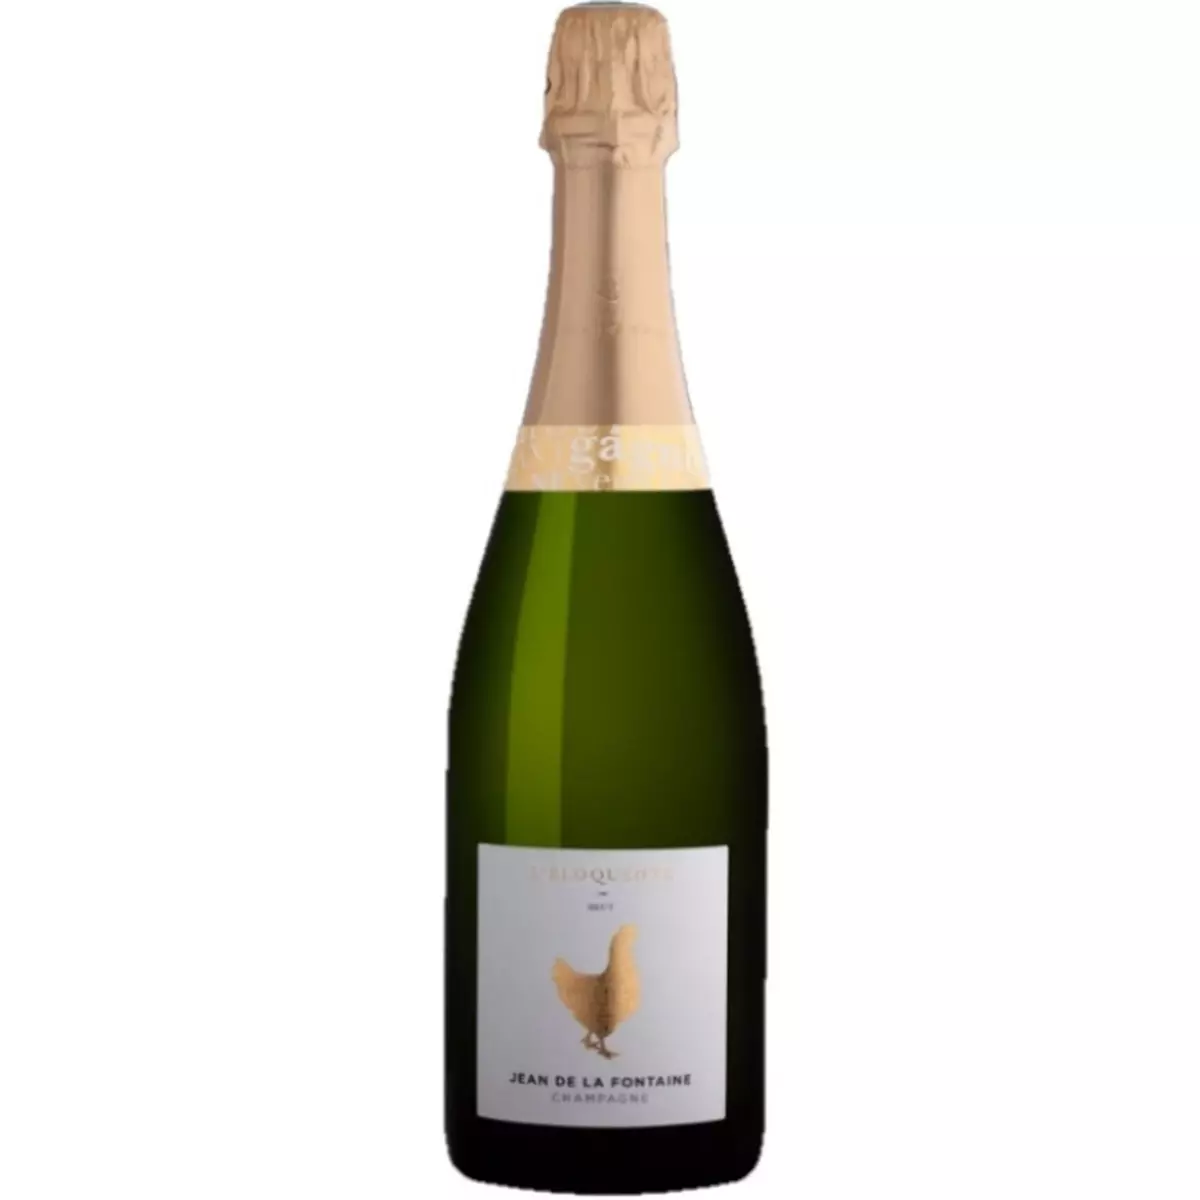 JEAN DE LA FONTAINE Champagne cuvée brut L'Eloquente 75cl